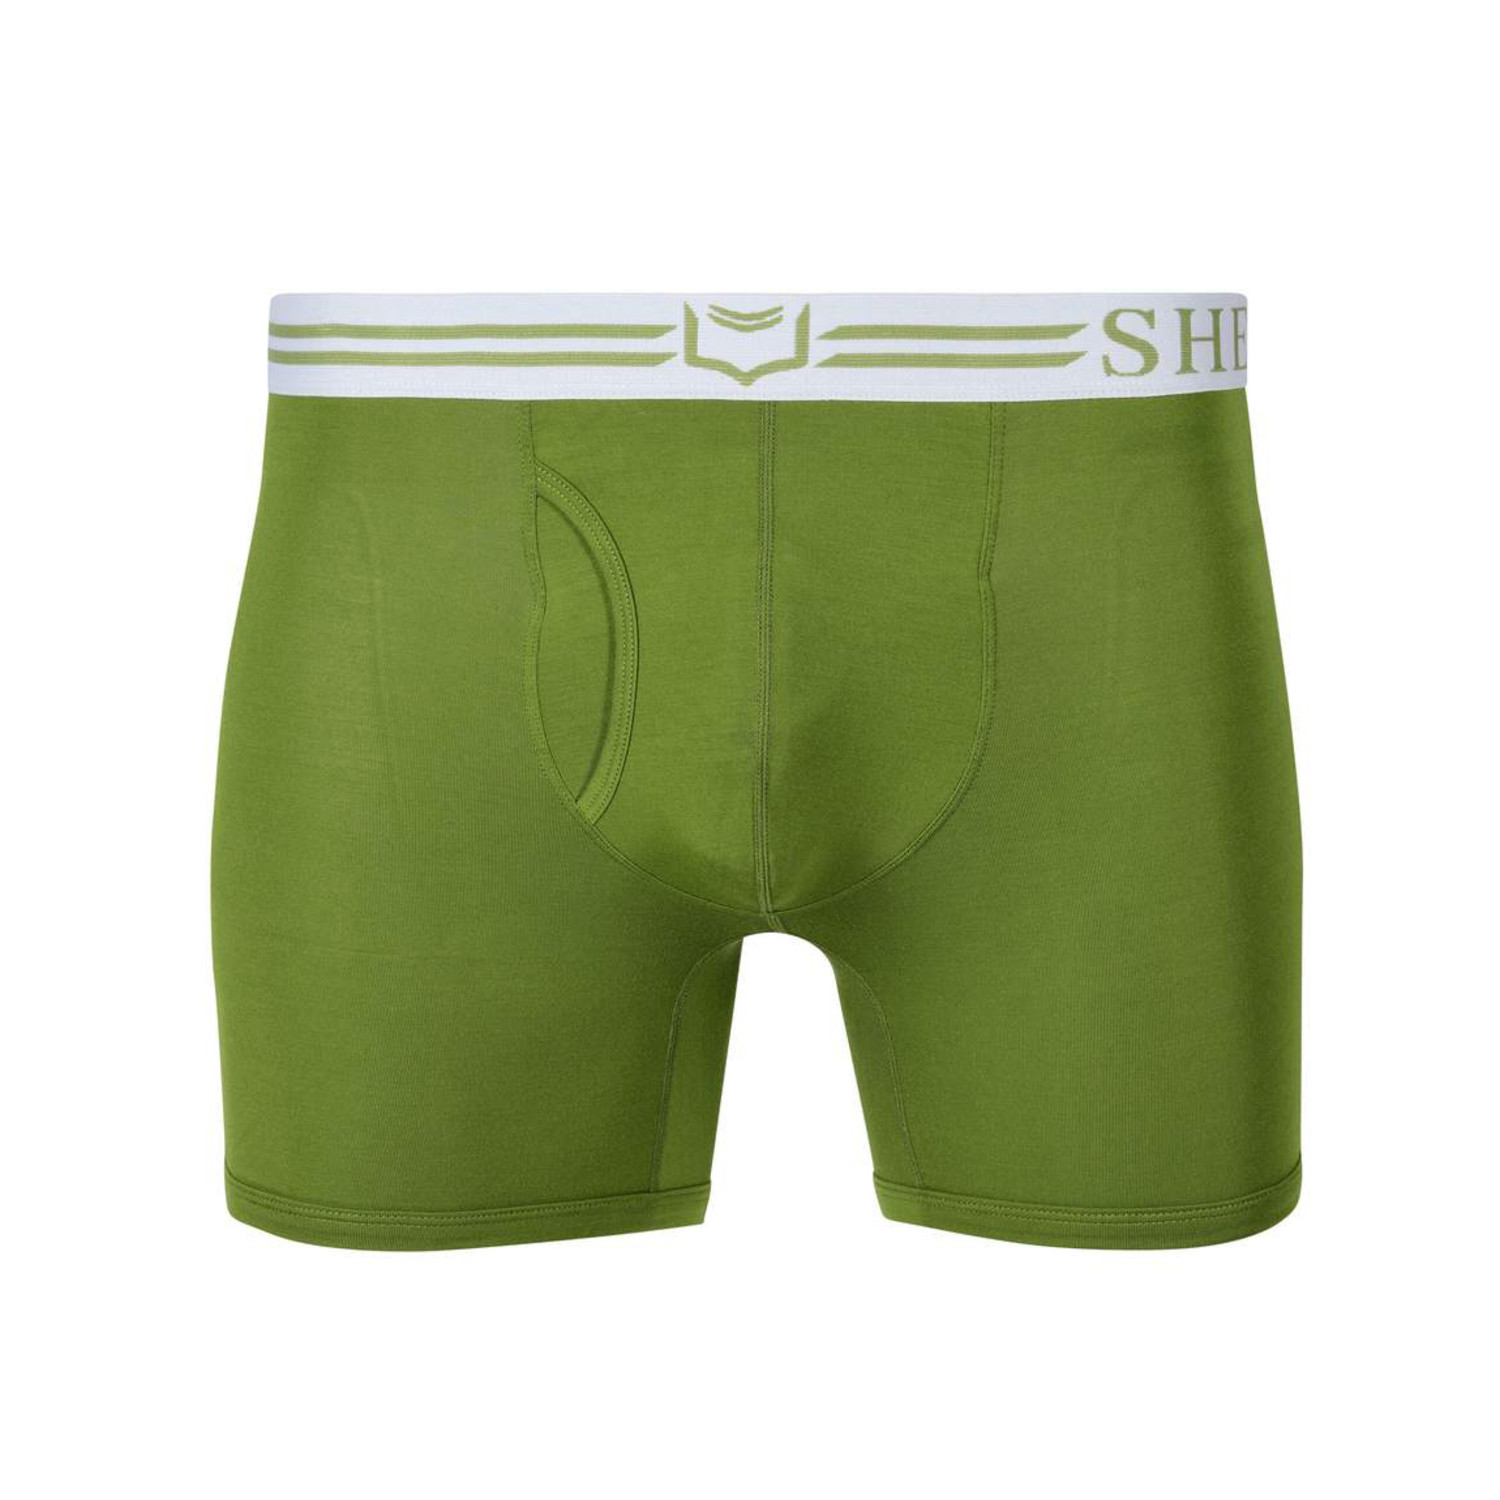 SHEATH 4.0 Men's Dual Pouch Boxer Brief // Green (XXL) - Sheath